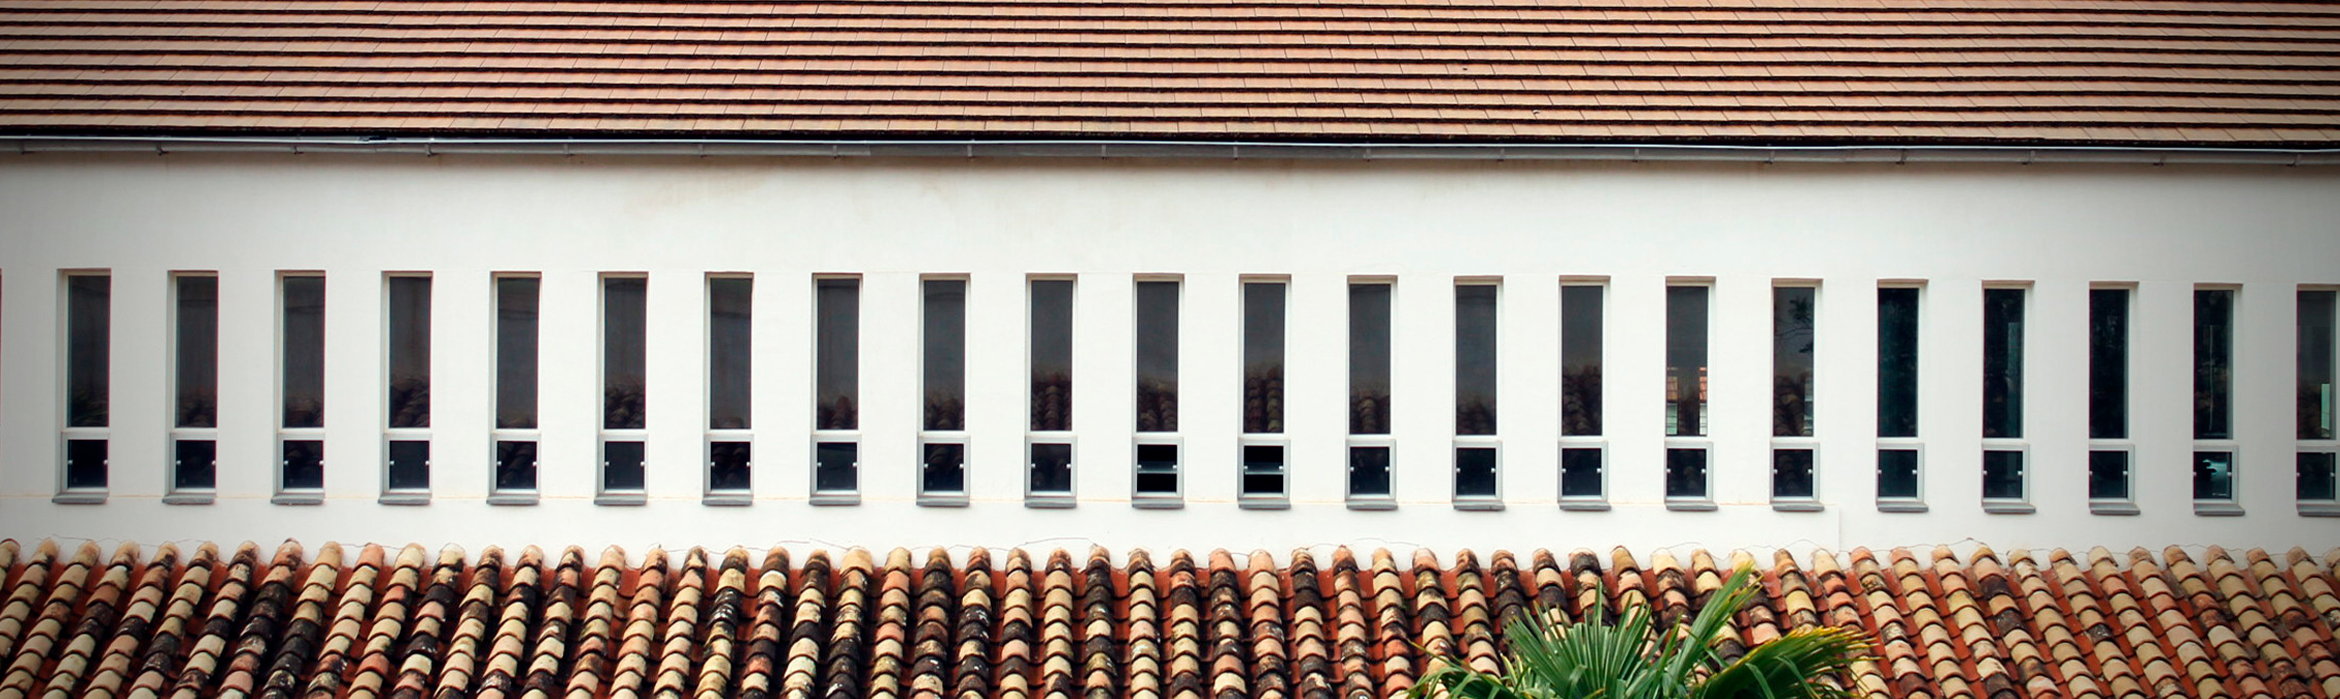 Imagen en la que se muestra el tejado de un edificio con varias ventanas